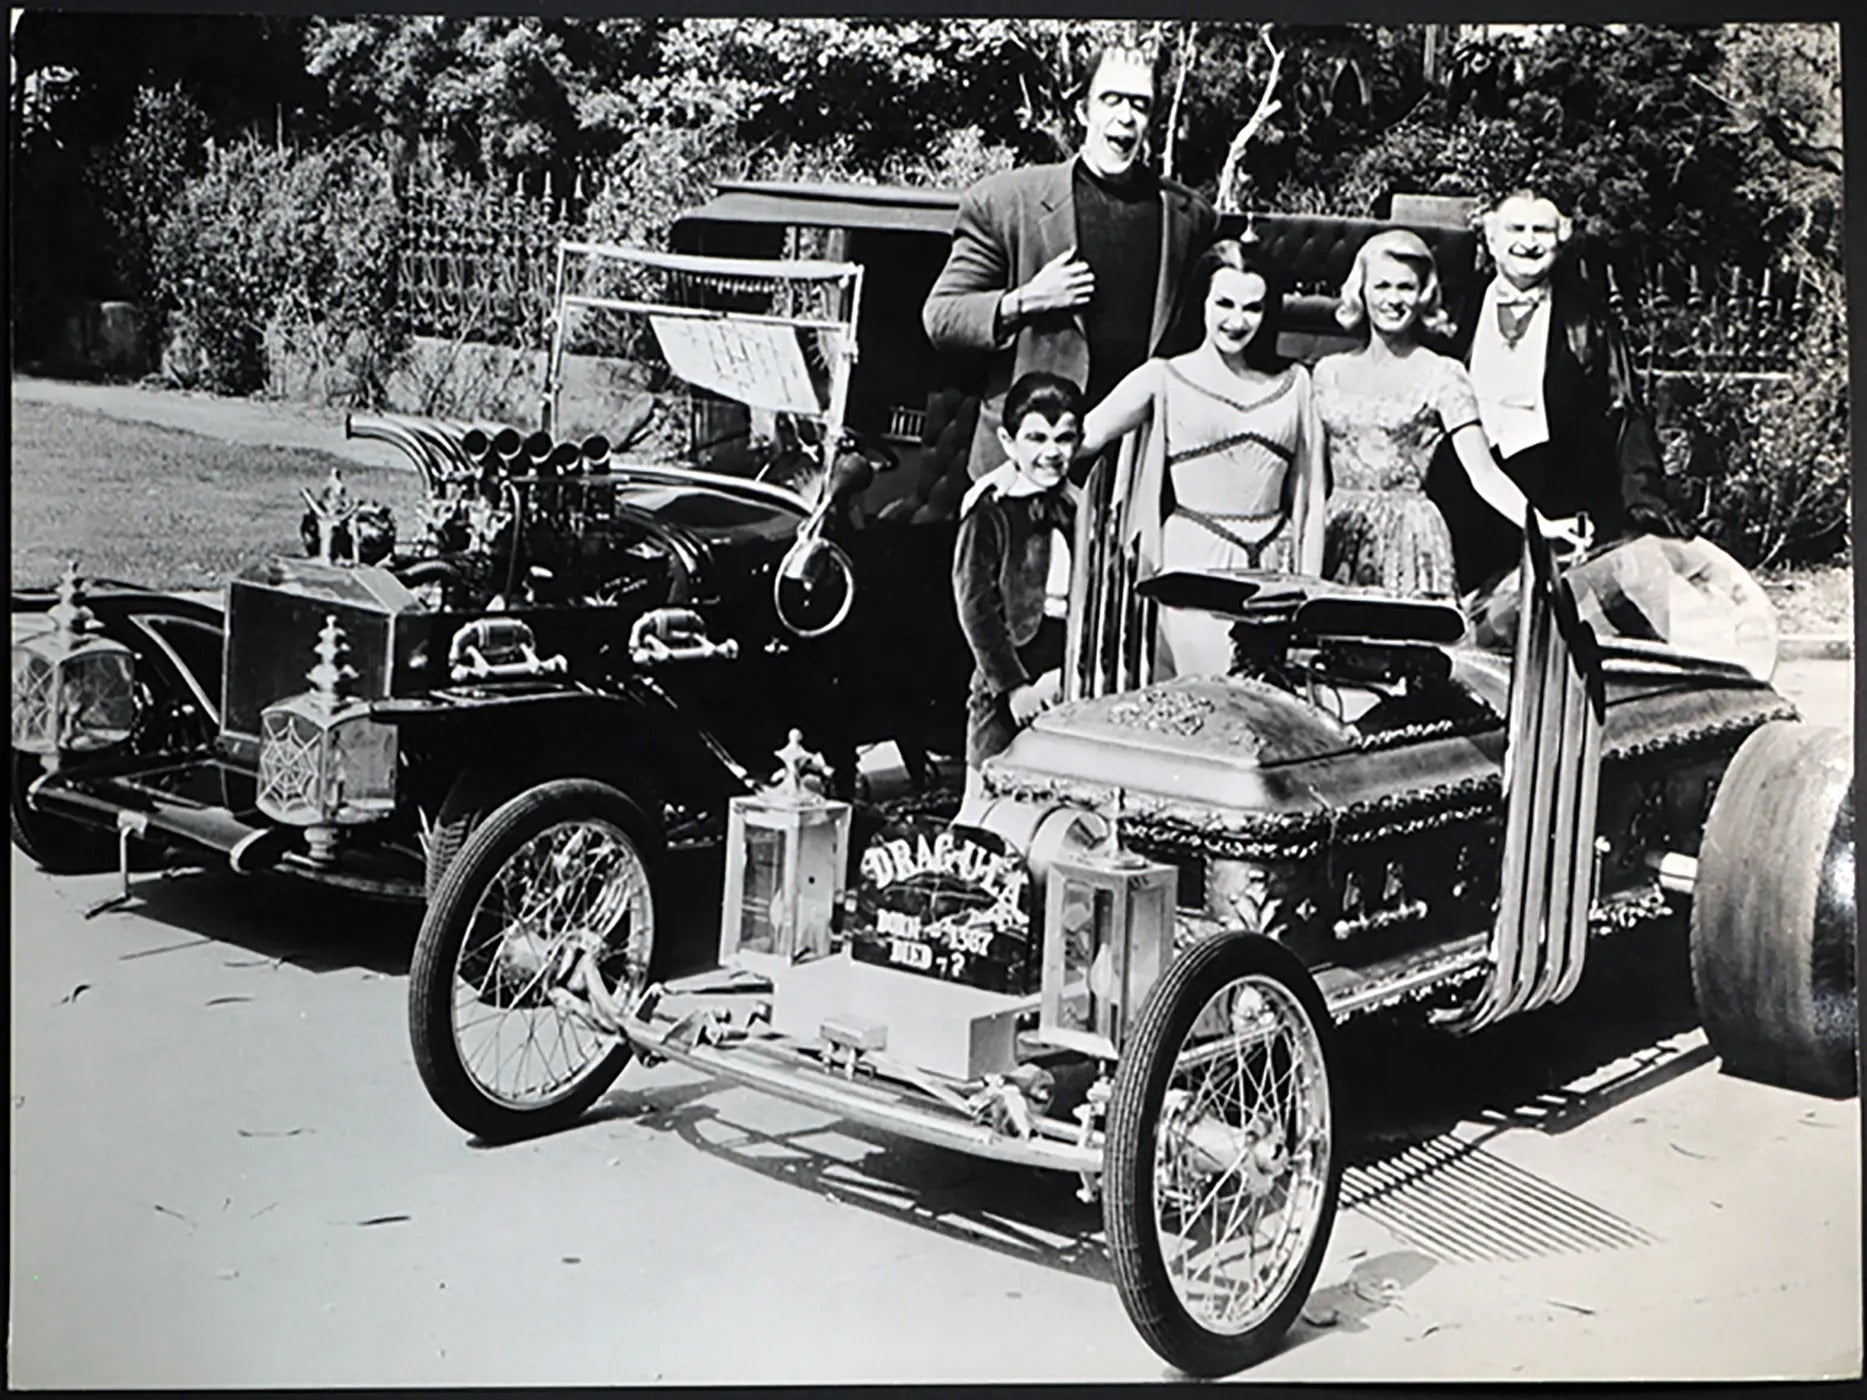 Serie Tv La famiglia Addams anni 60 Ft 622 - Stampa 27x37 cm - Farabola Stampa ai sali d'argento